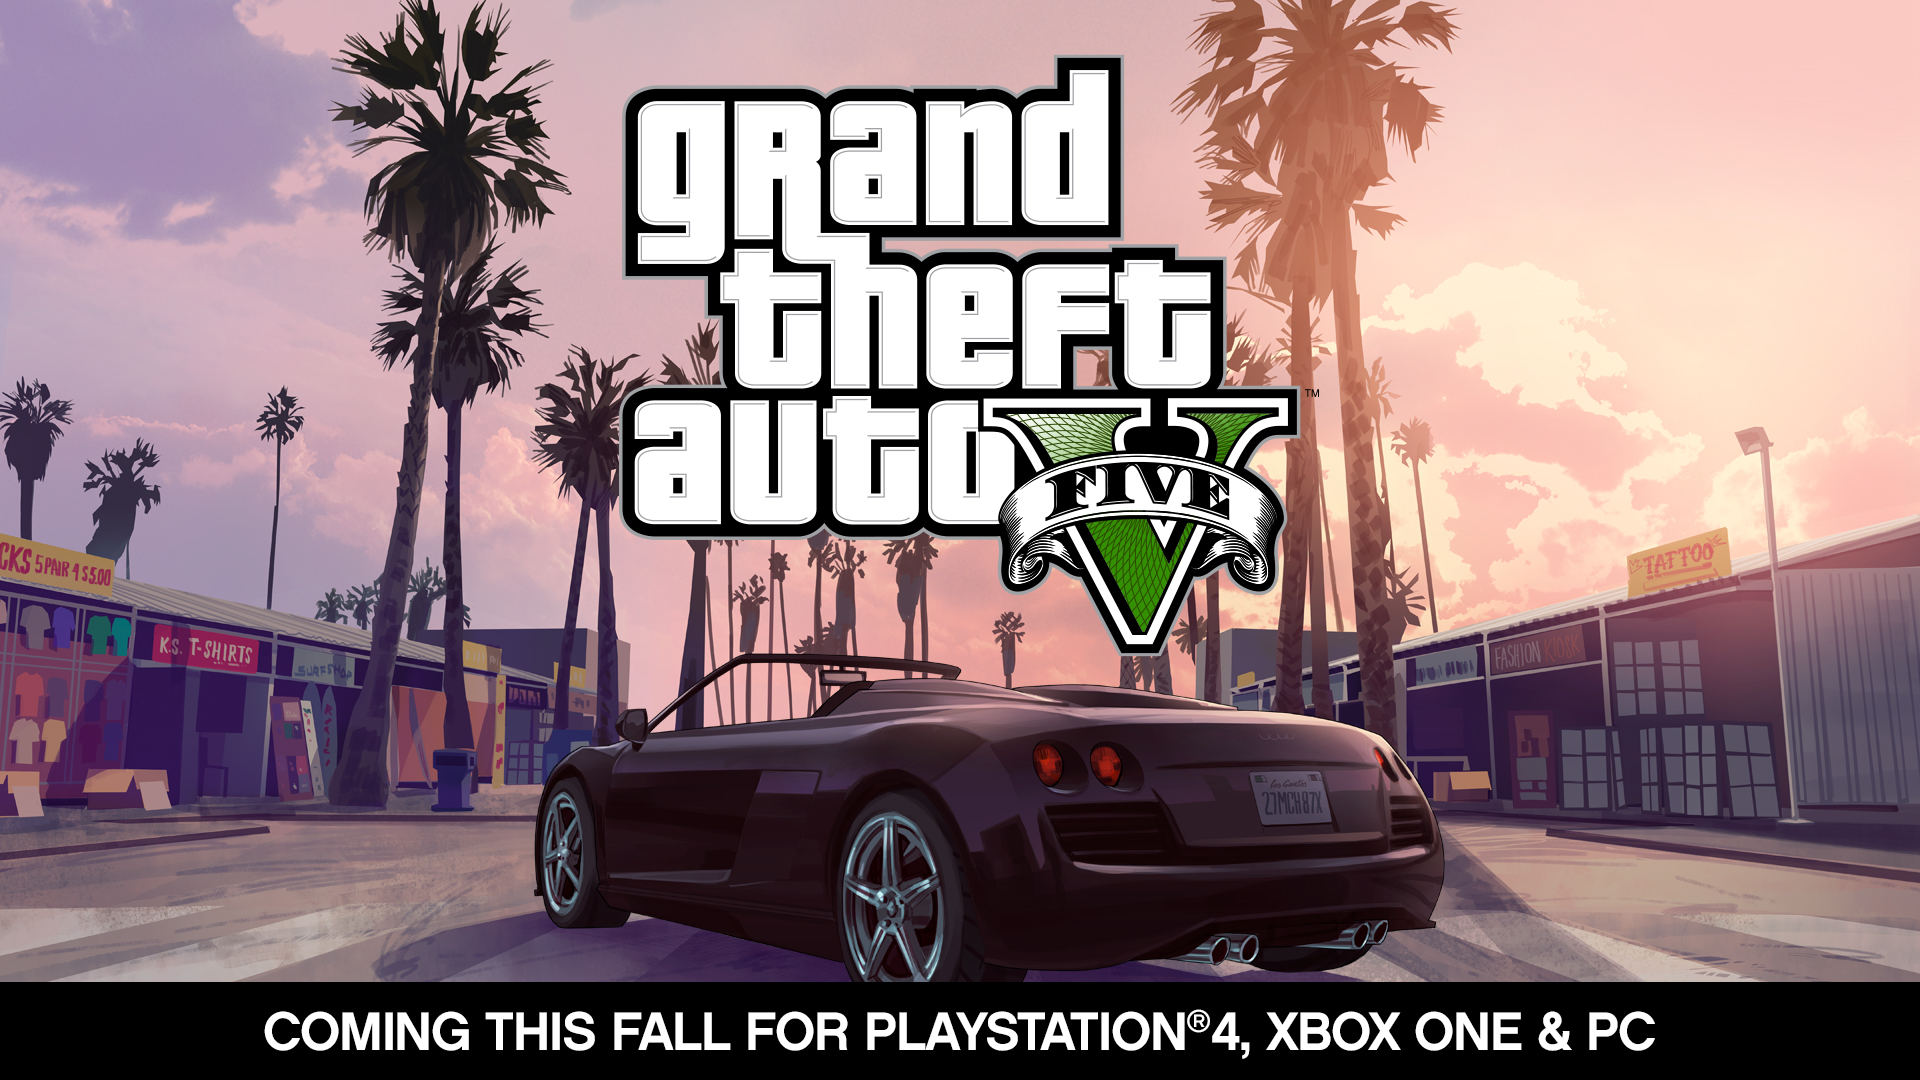 Ontdek De Collectie Grand Theft Auto Videospel